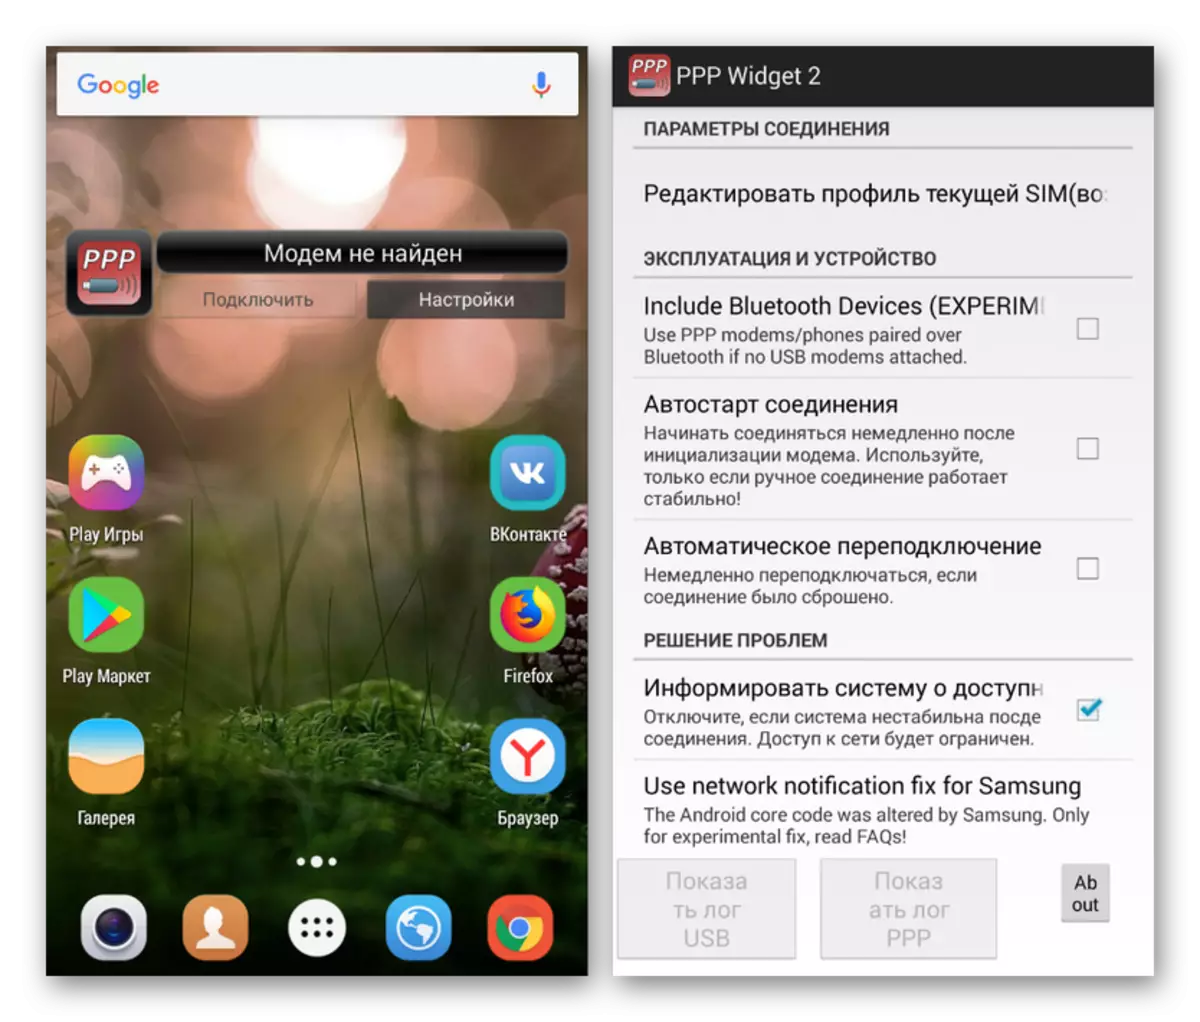 Usebenzisa uhlelo lwe-PPP Widget 2 ku-Android